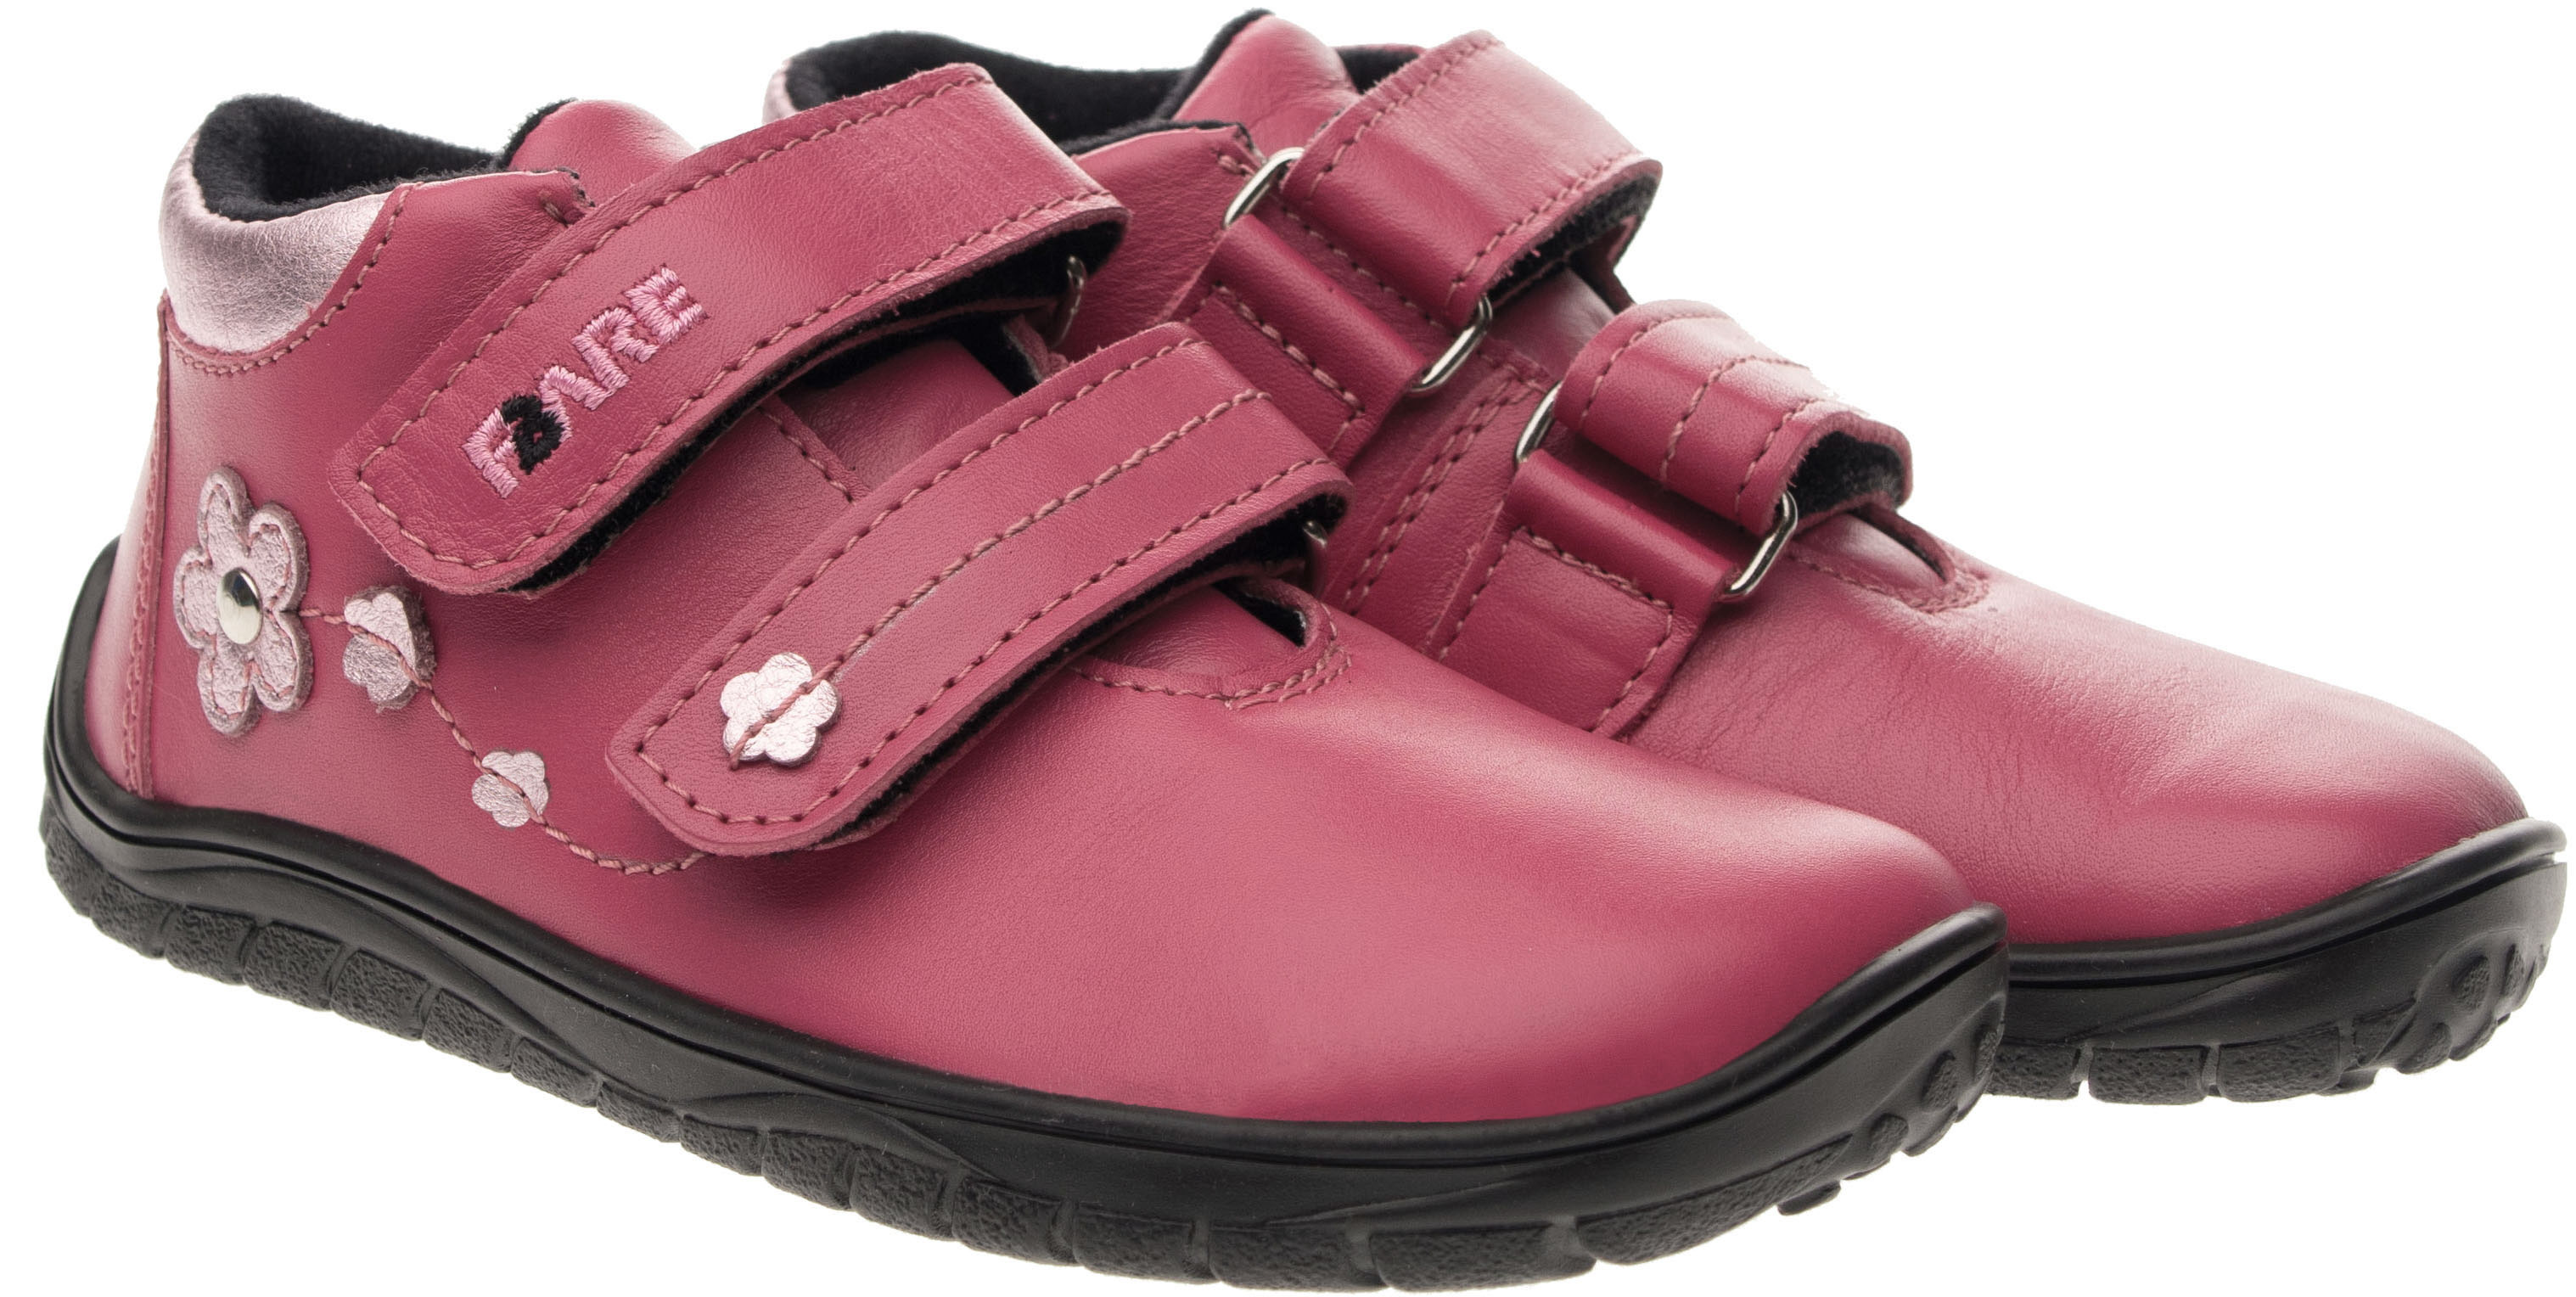 FARE BARE celoroční boty s membránou B5516152 Velikost obuvi: 30